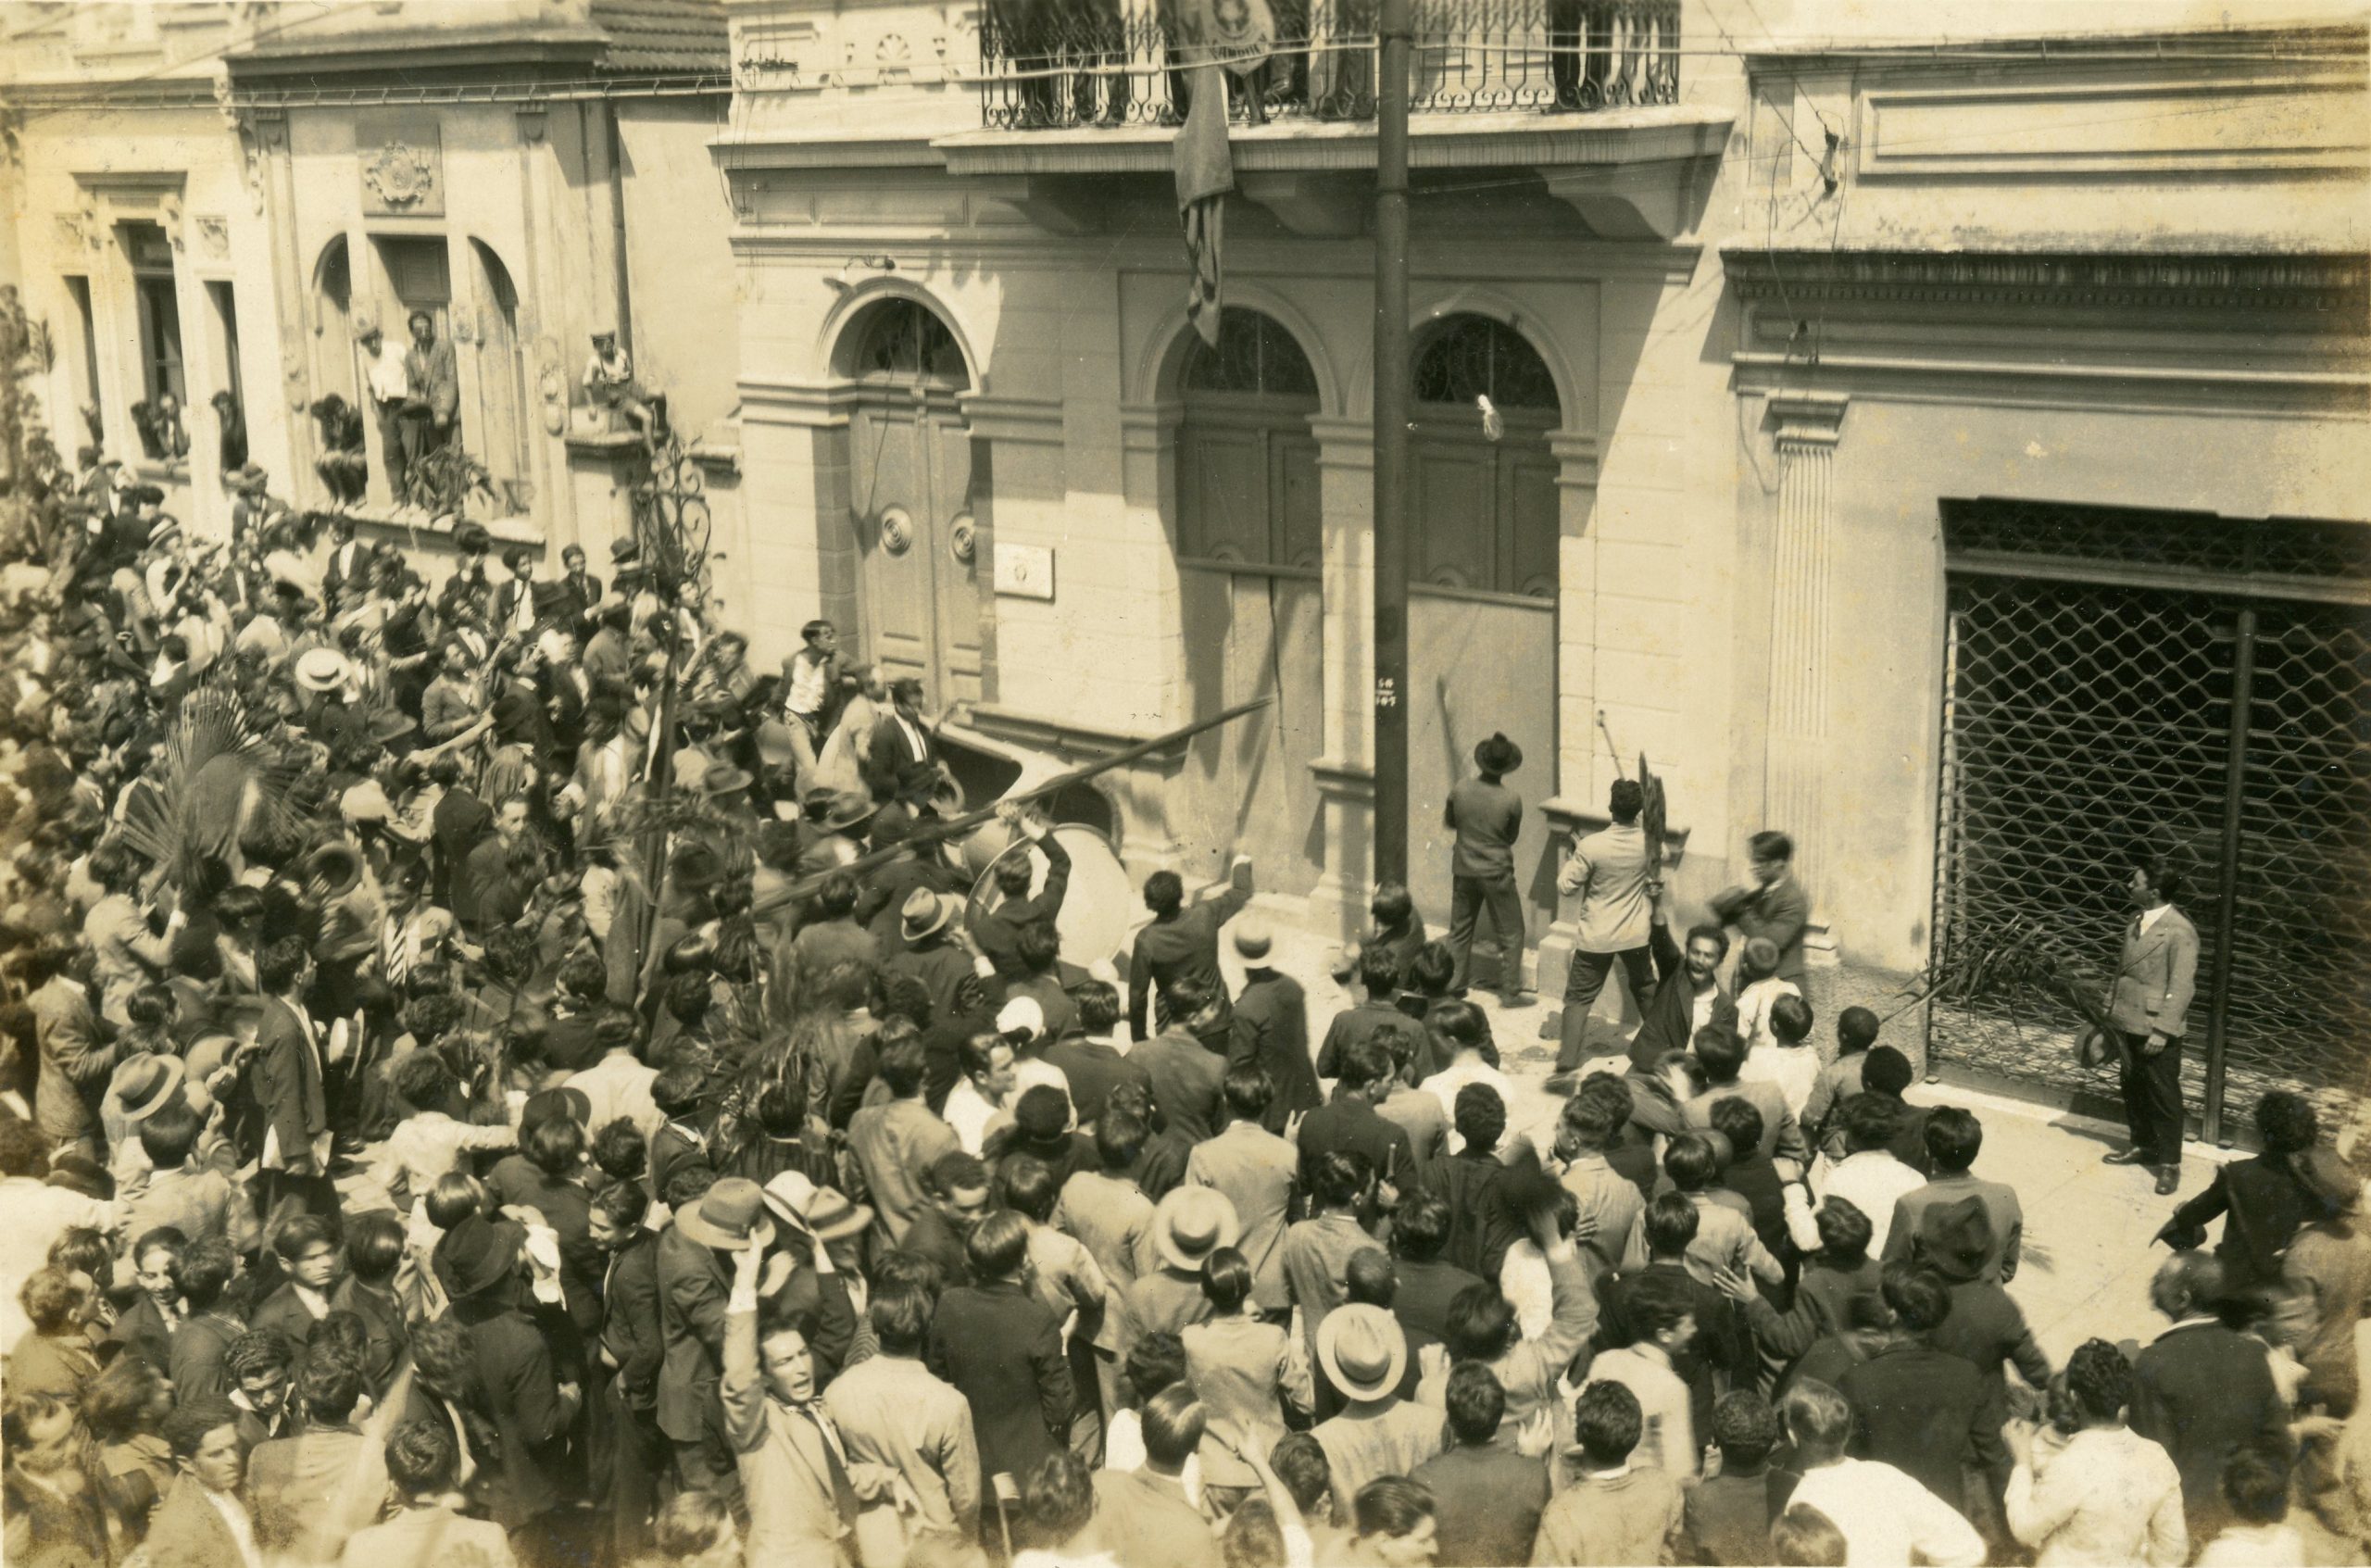 Foto em preto e branco de uma grande multidão de homens tentando invadir um prédio. Na parte central da imagem vemos que parte deste grupo segura uma barra de ferro que está sendo pressionada sobre a porta de um edifício.